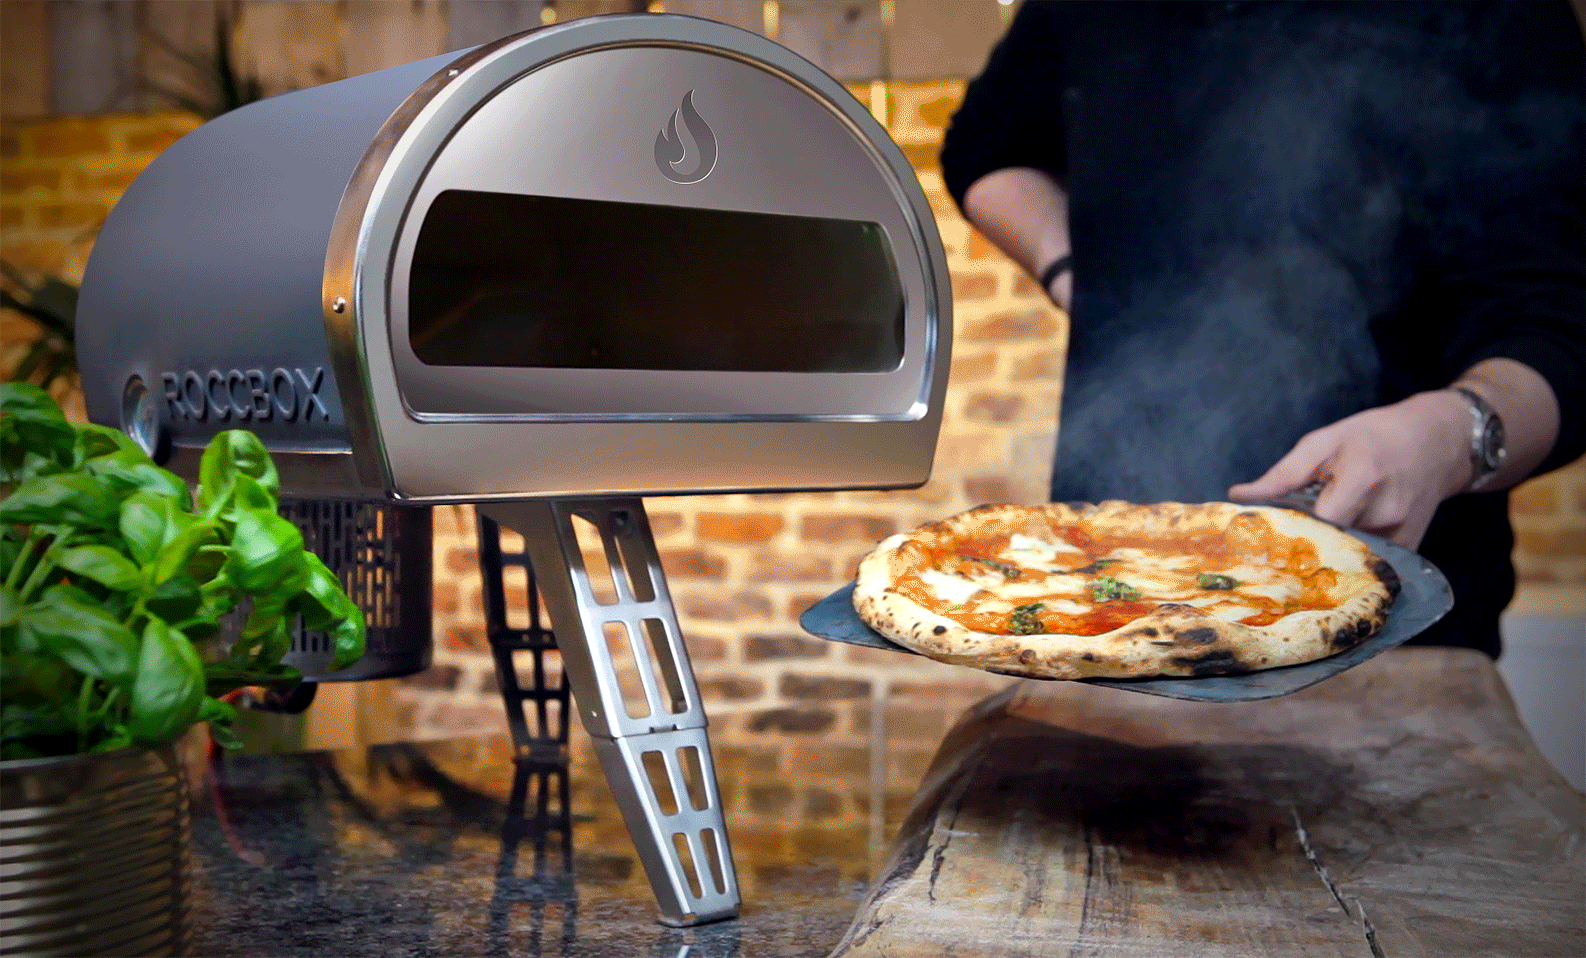 15分で窯の温度が500度まで上がるポータブル石窯で いつでも本格ピザが食べられる Bridge ブリッジ テクノロジー スタートアップ情報